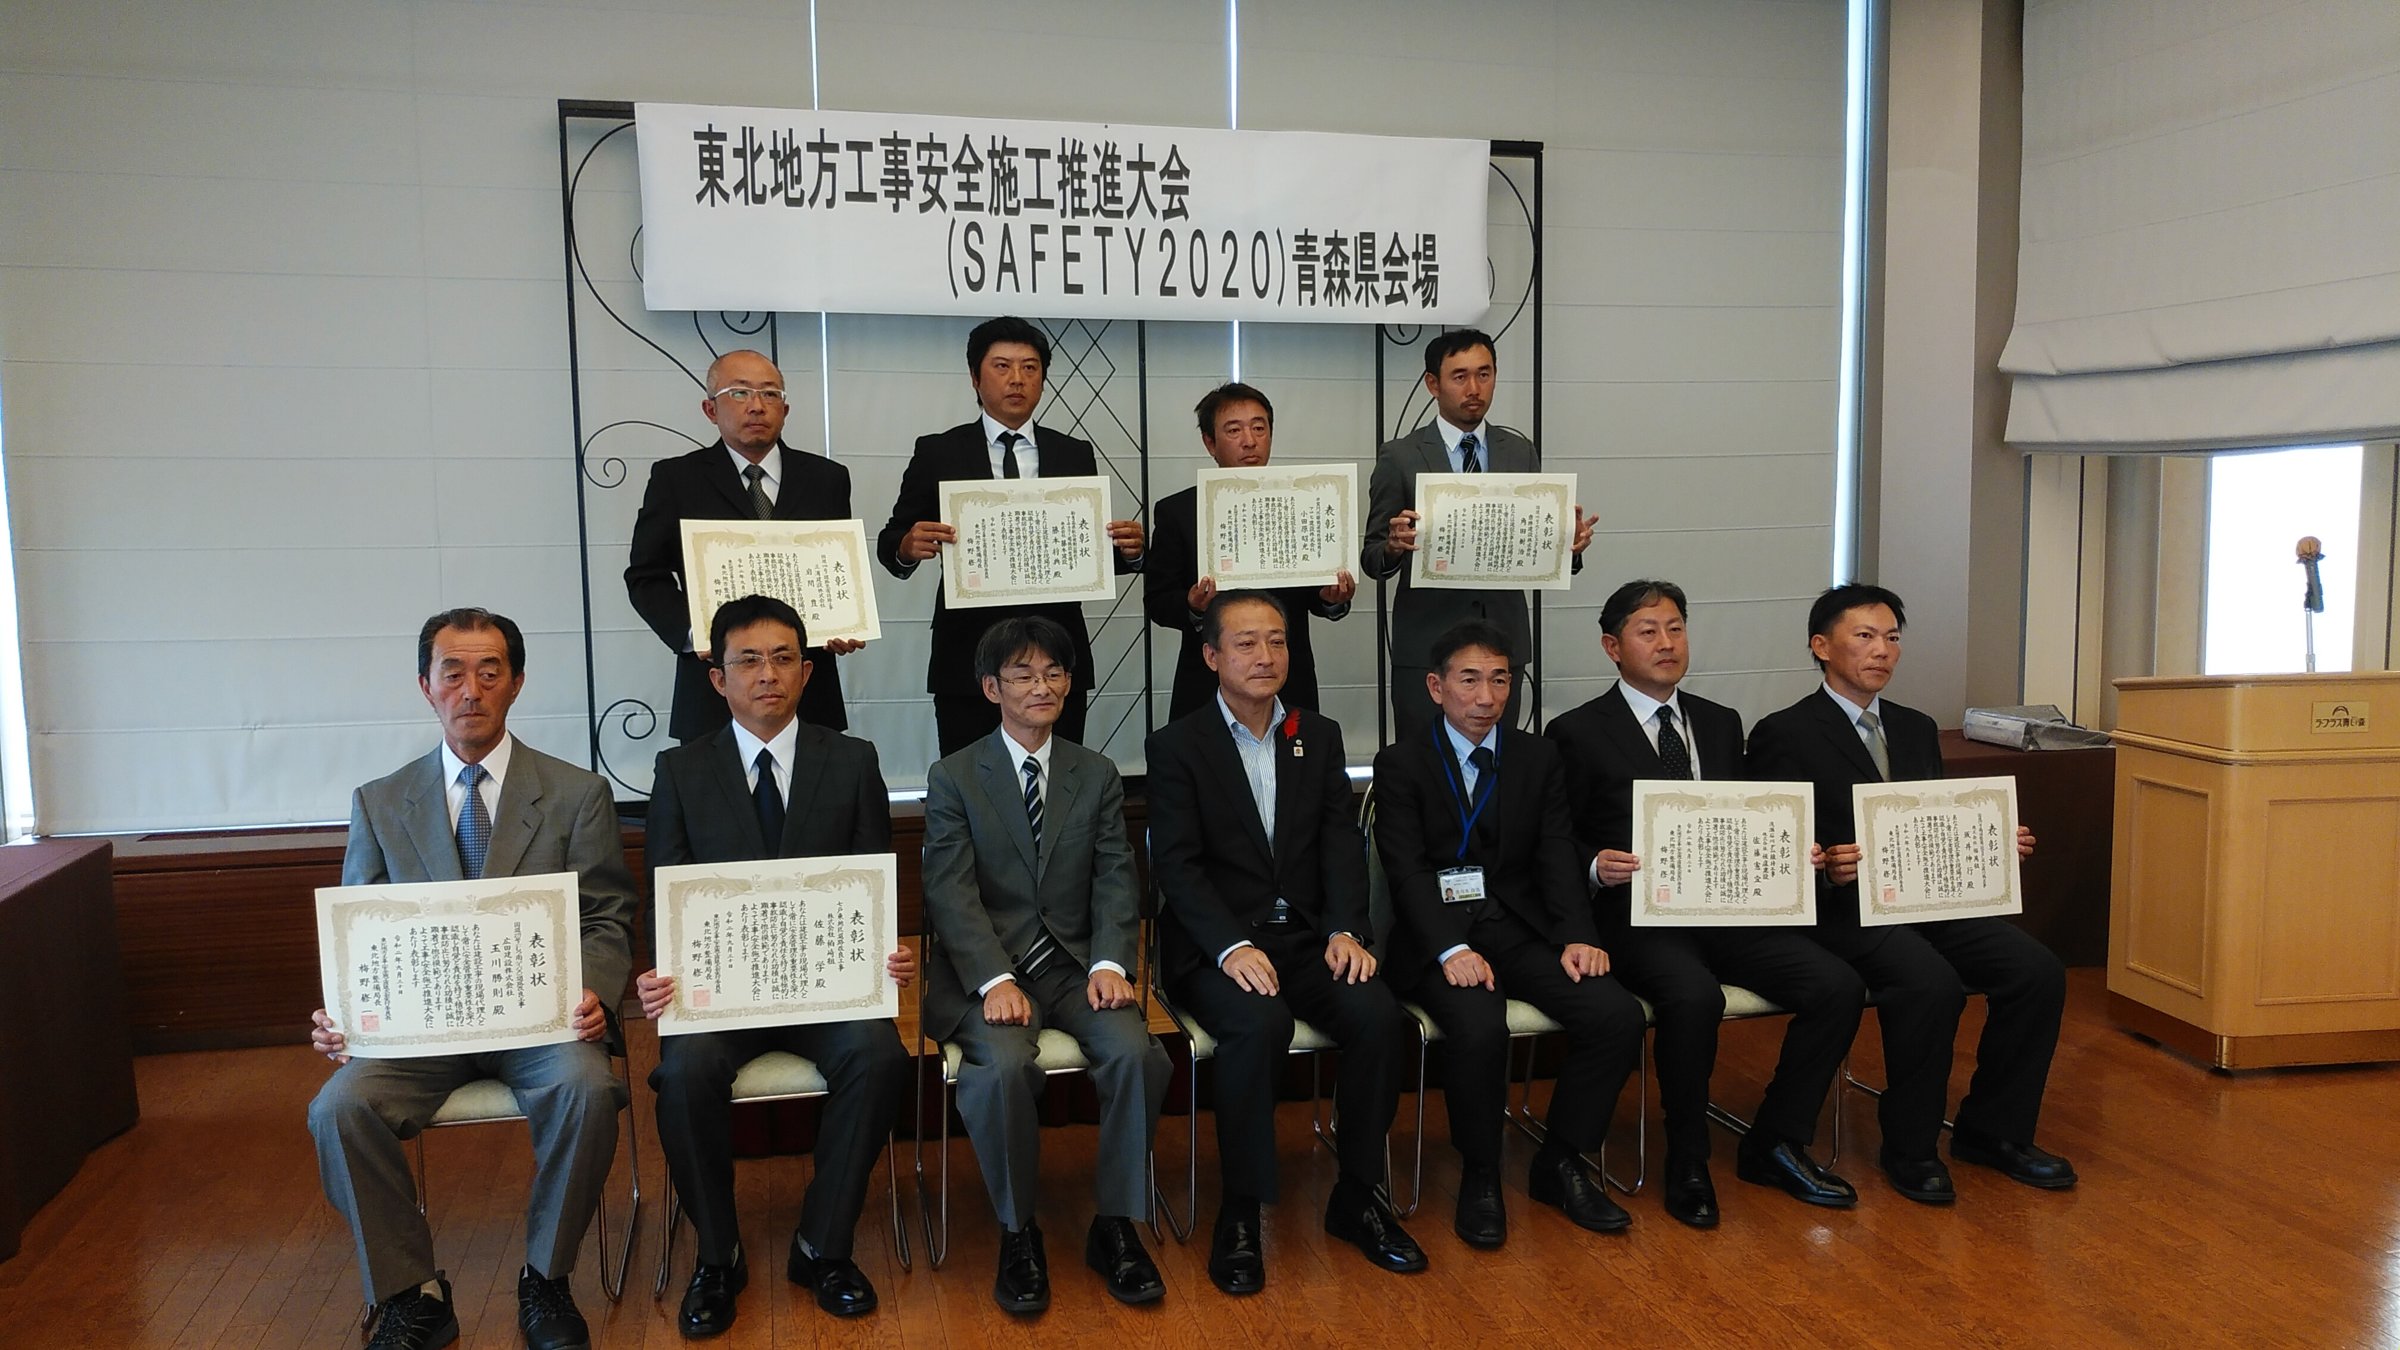 東北地方工事安全施工推進大会(SAFETY2020)で表彰を受けました。